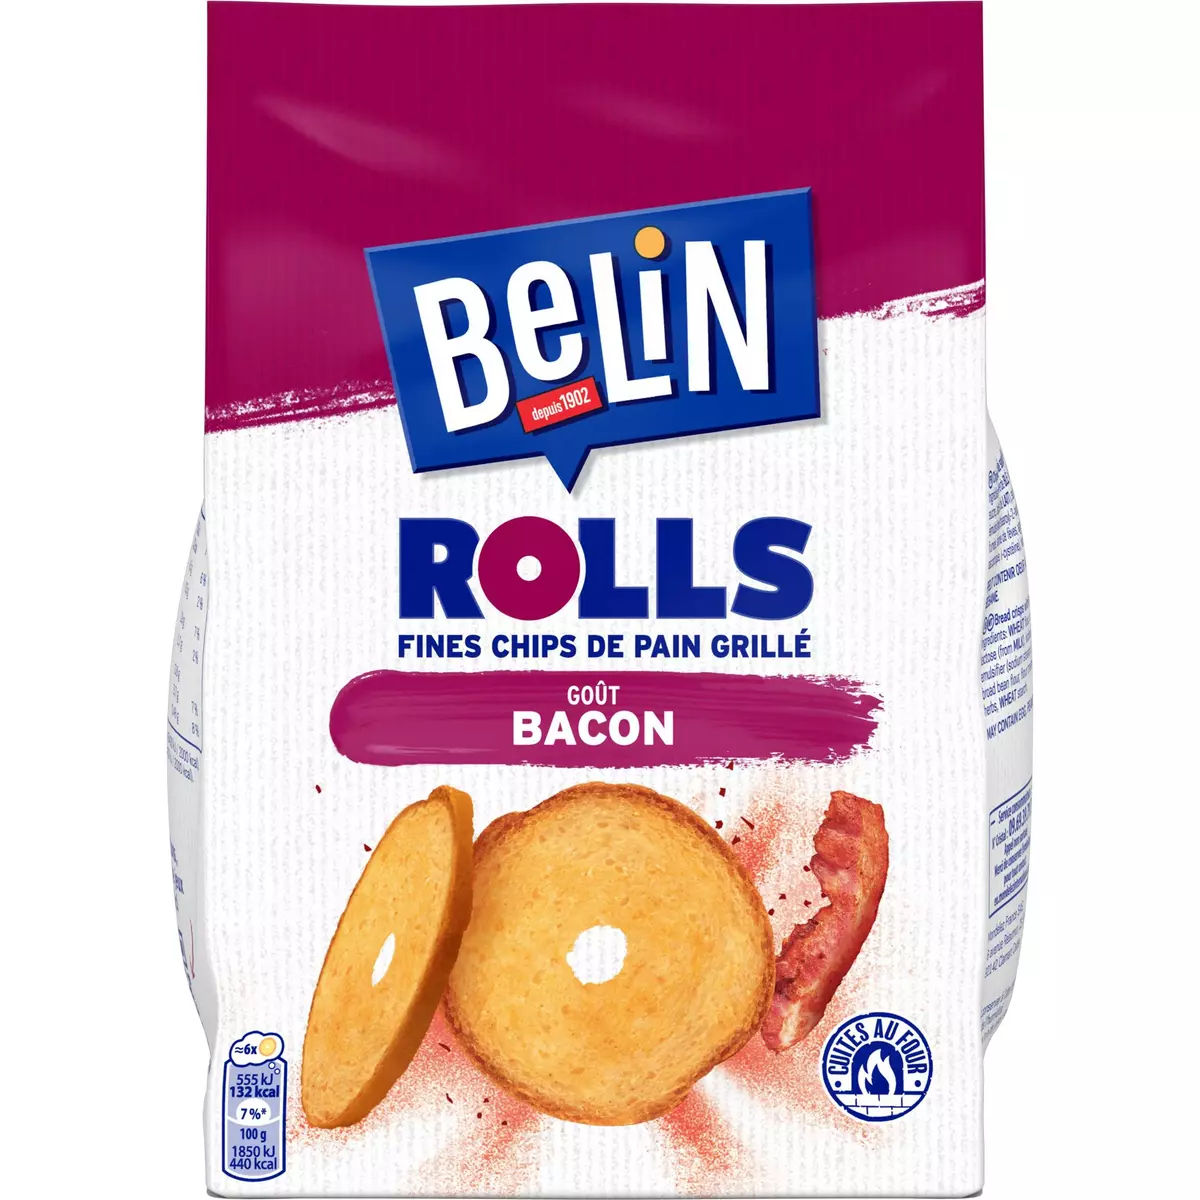 BELIN Fines chips de pain grillé Rolls goût bacon 150g